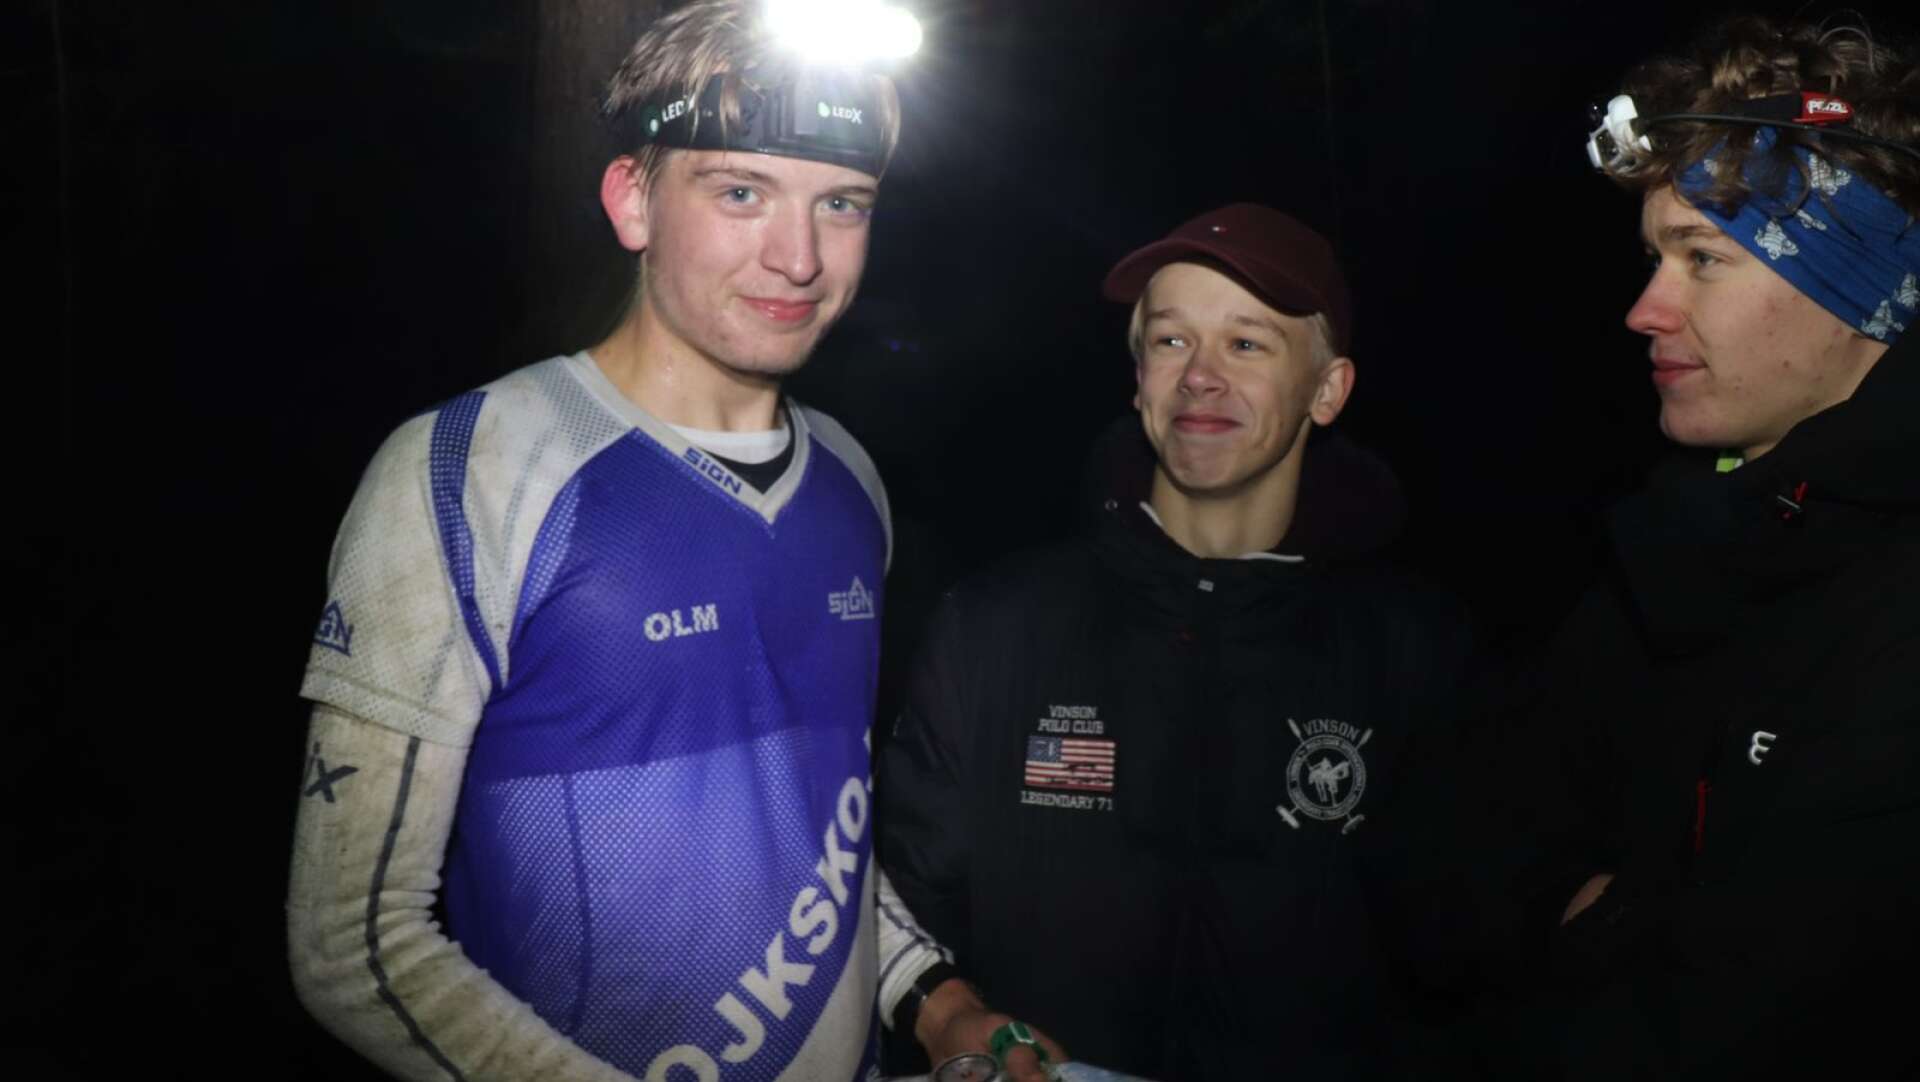 Lukas Olm från Kils OK vann Kylklampspremiären på Norra Sörmon. Här ses han med banläggarna Gustav Perman och Mattias Hane från arrangörsklubben OK Tyr.